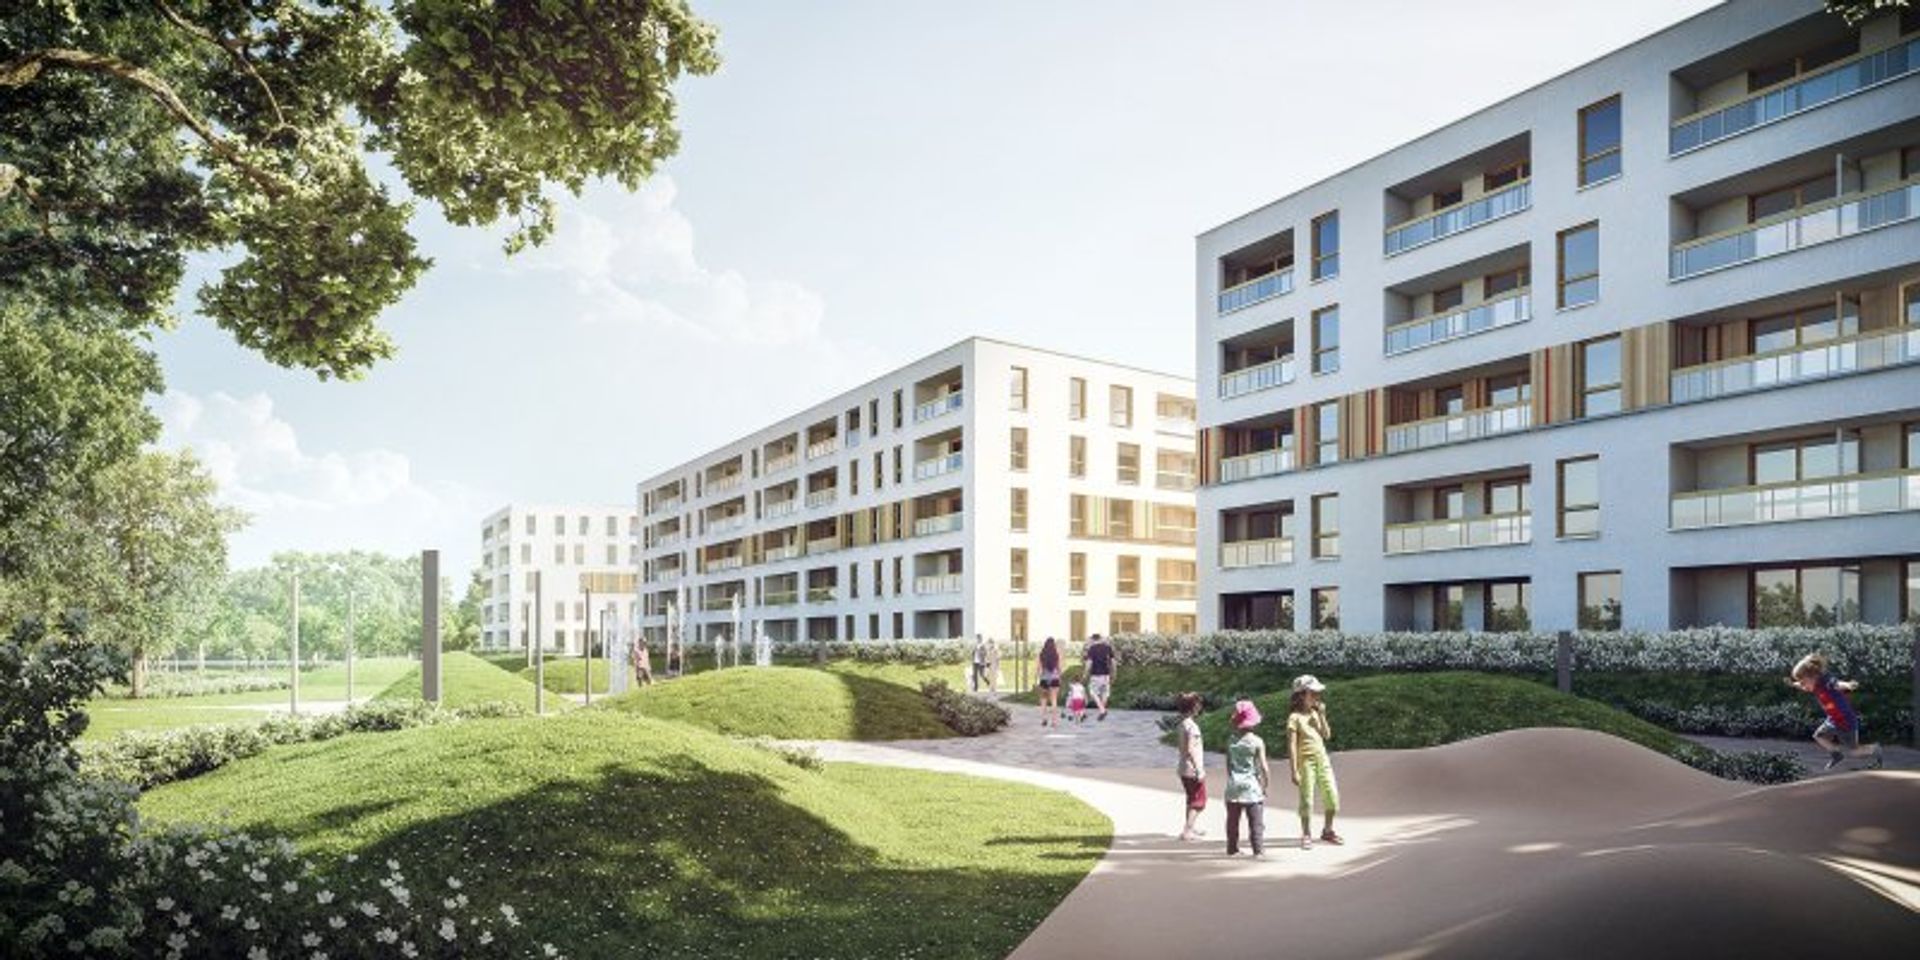  Matexi Polska rozpoczyna budowę II etapu osiedla „Kolska od Nowa”. 126 nowoczesnych mieszkań wpisanych w półhektarową przestrzeń, prywatnego parku trafi do oferty jeszcze we wrześniu